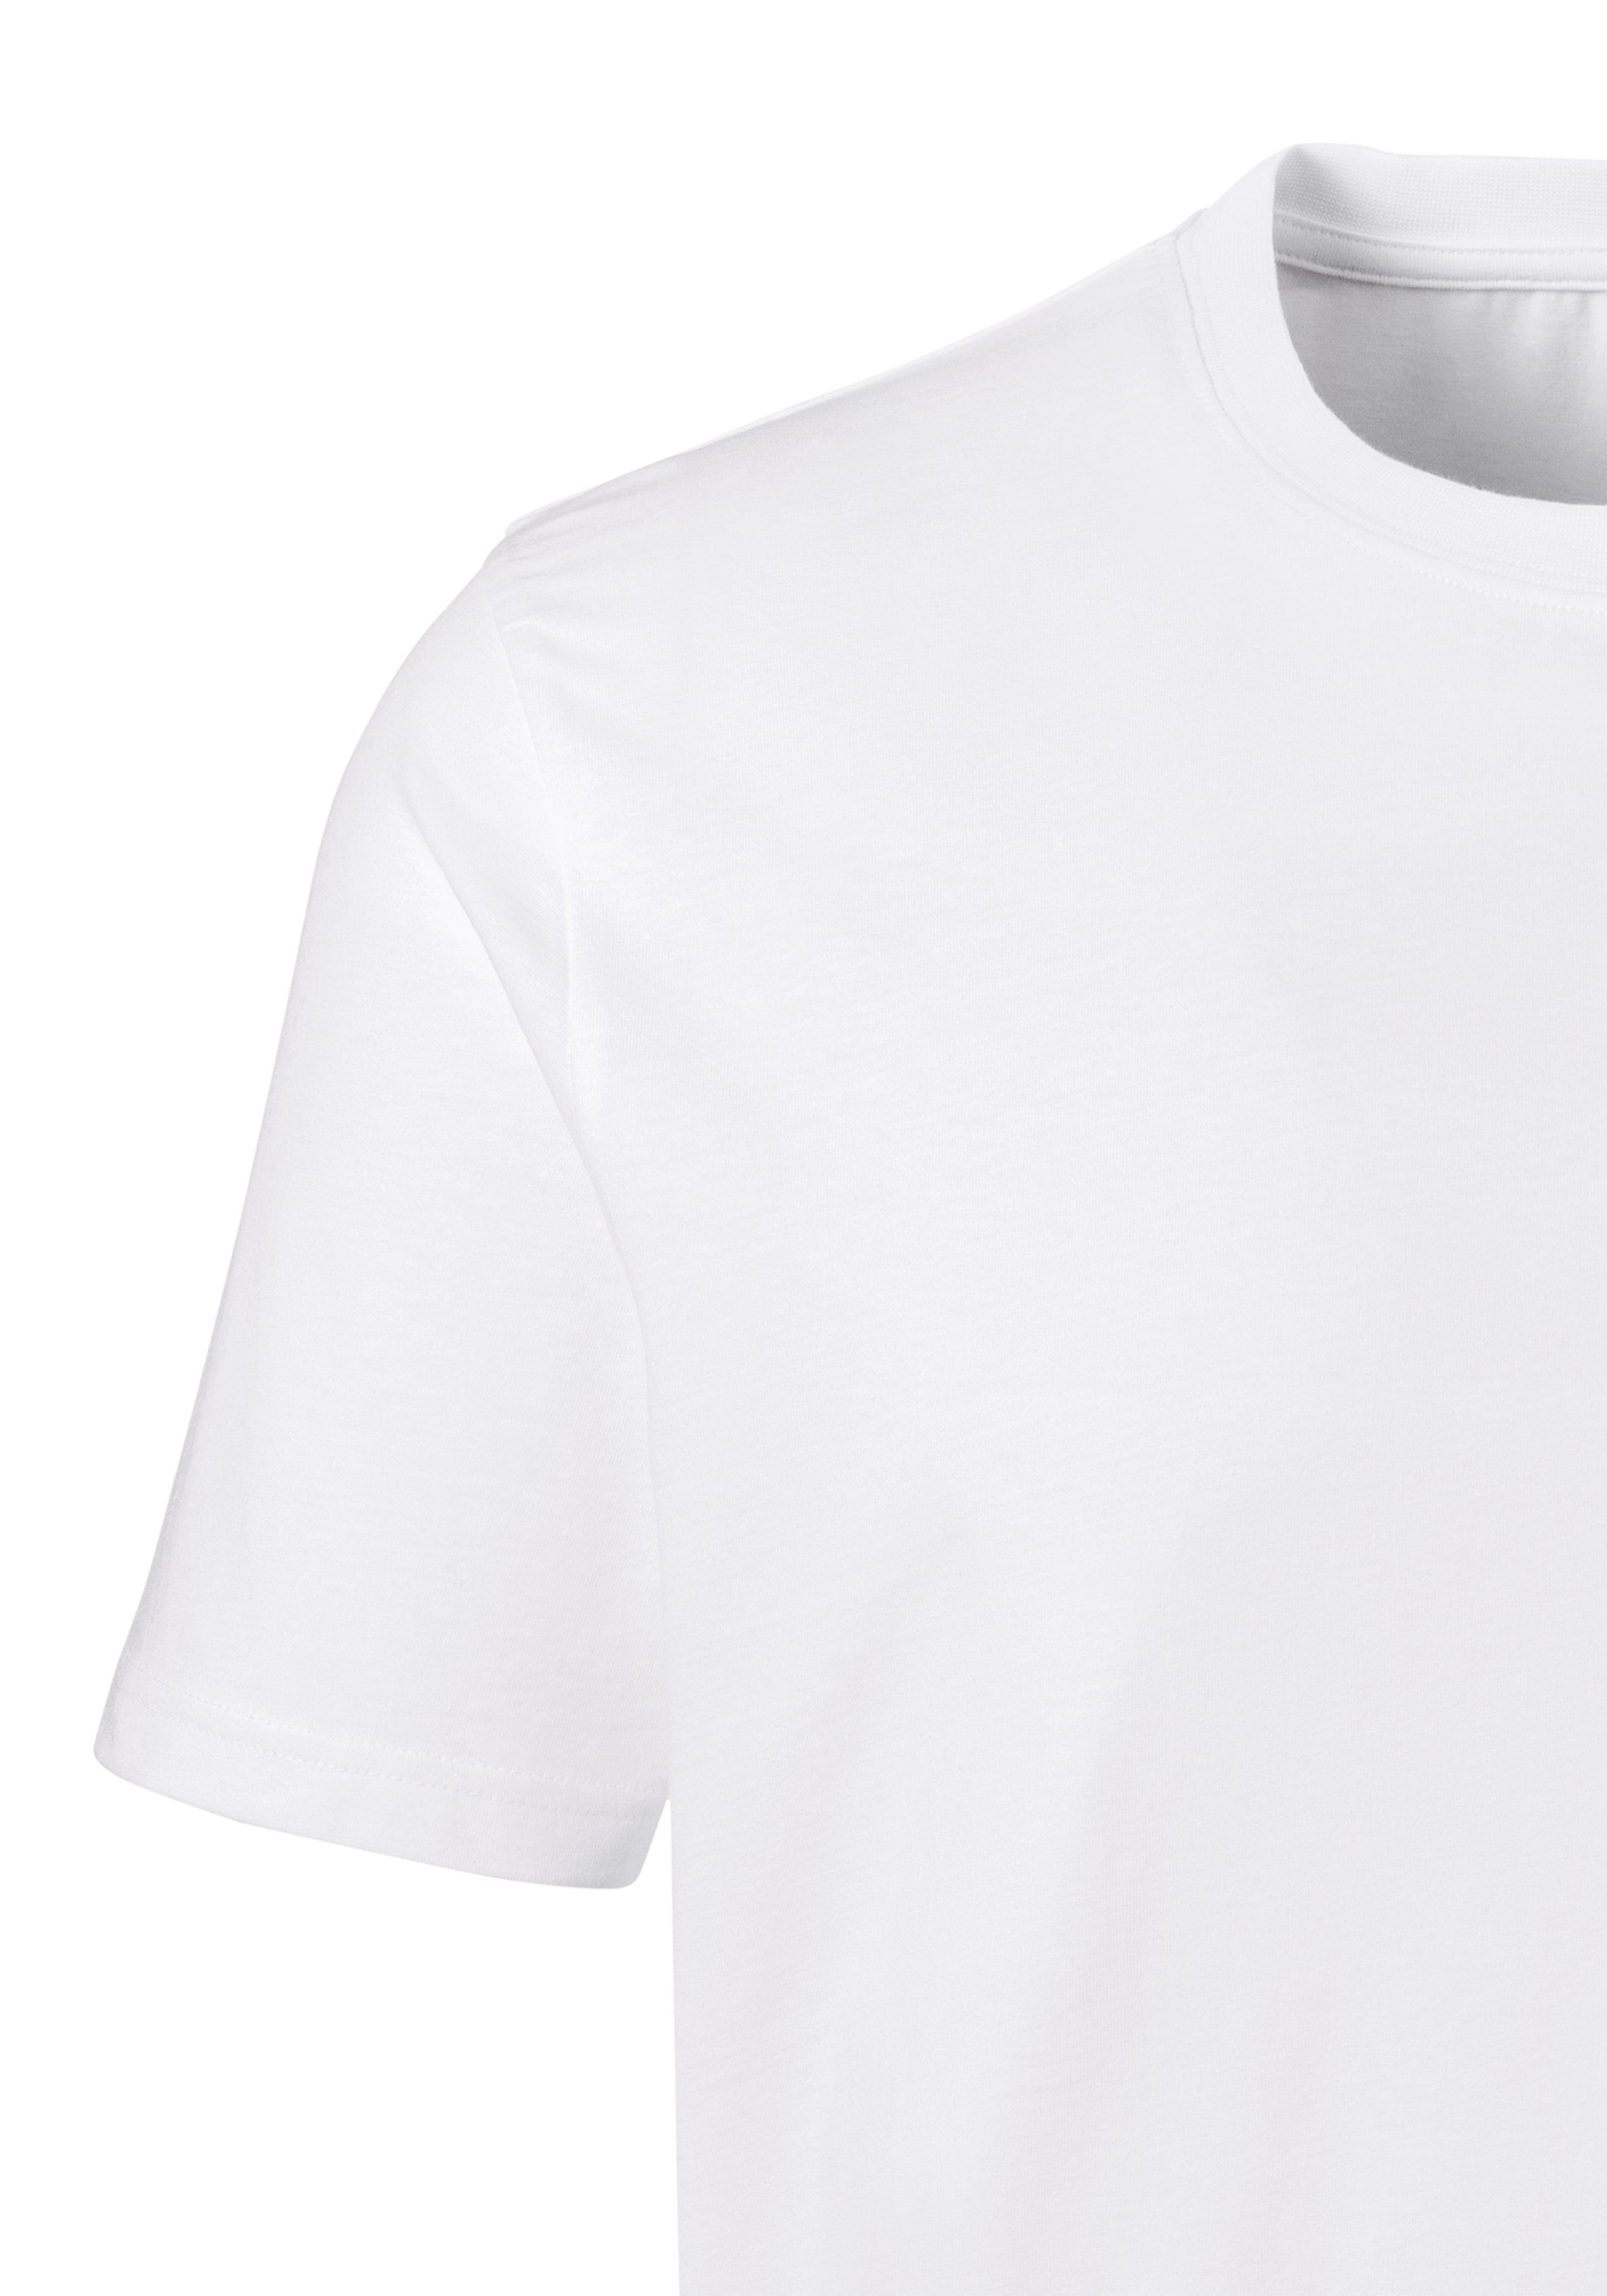 H.I.S Kurzarmshirt (3er-Pack) perfekt Unterziehshirt als weiß